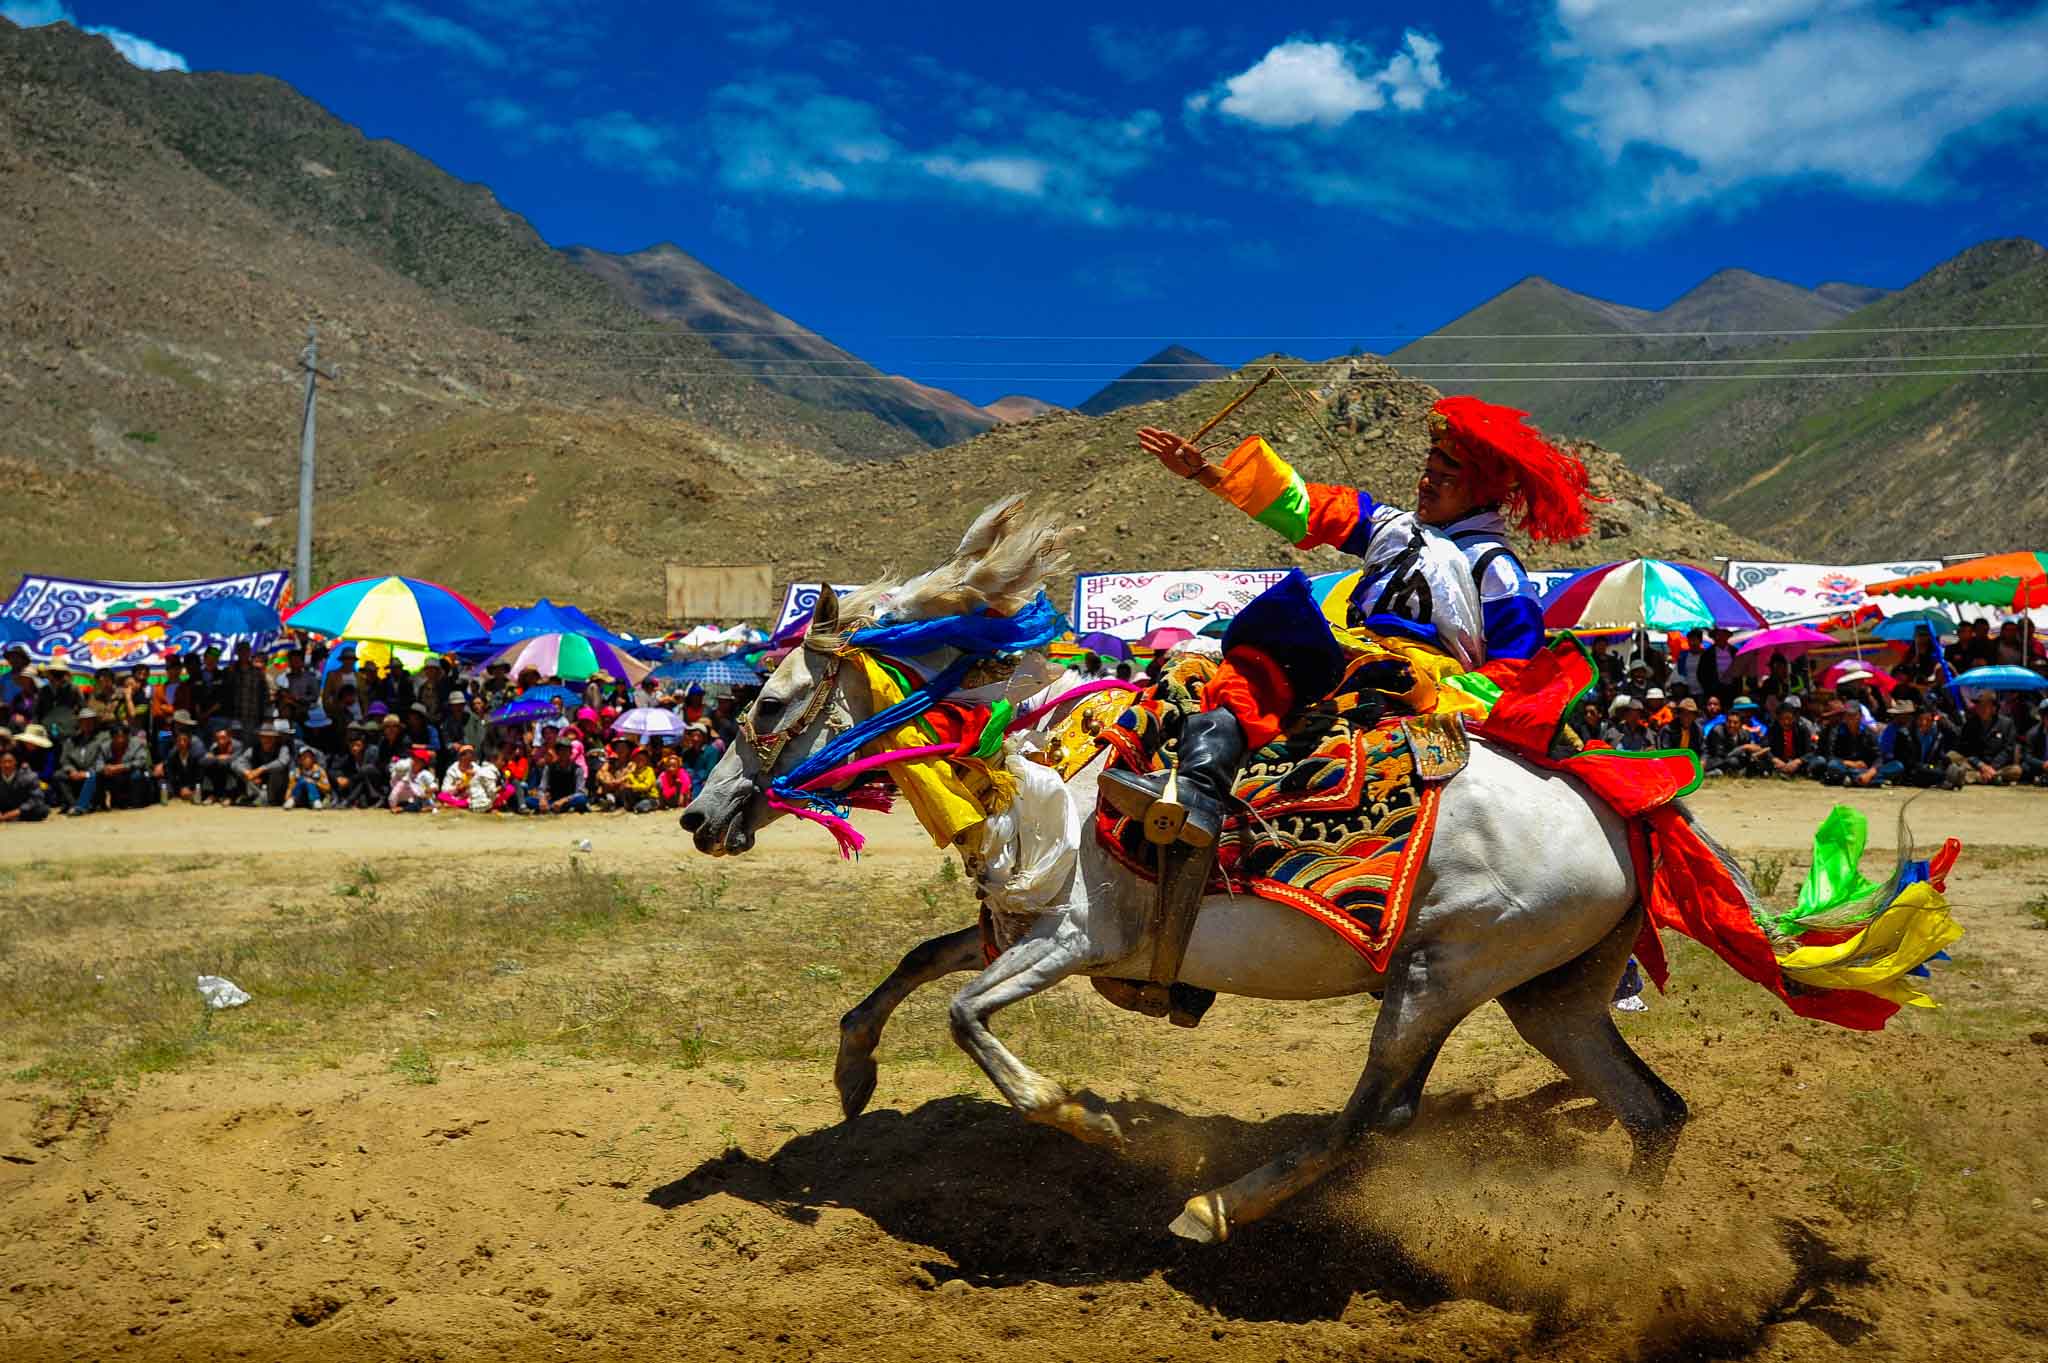 văn hoá tây tạng – nơi tận cùng của bí ẩn